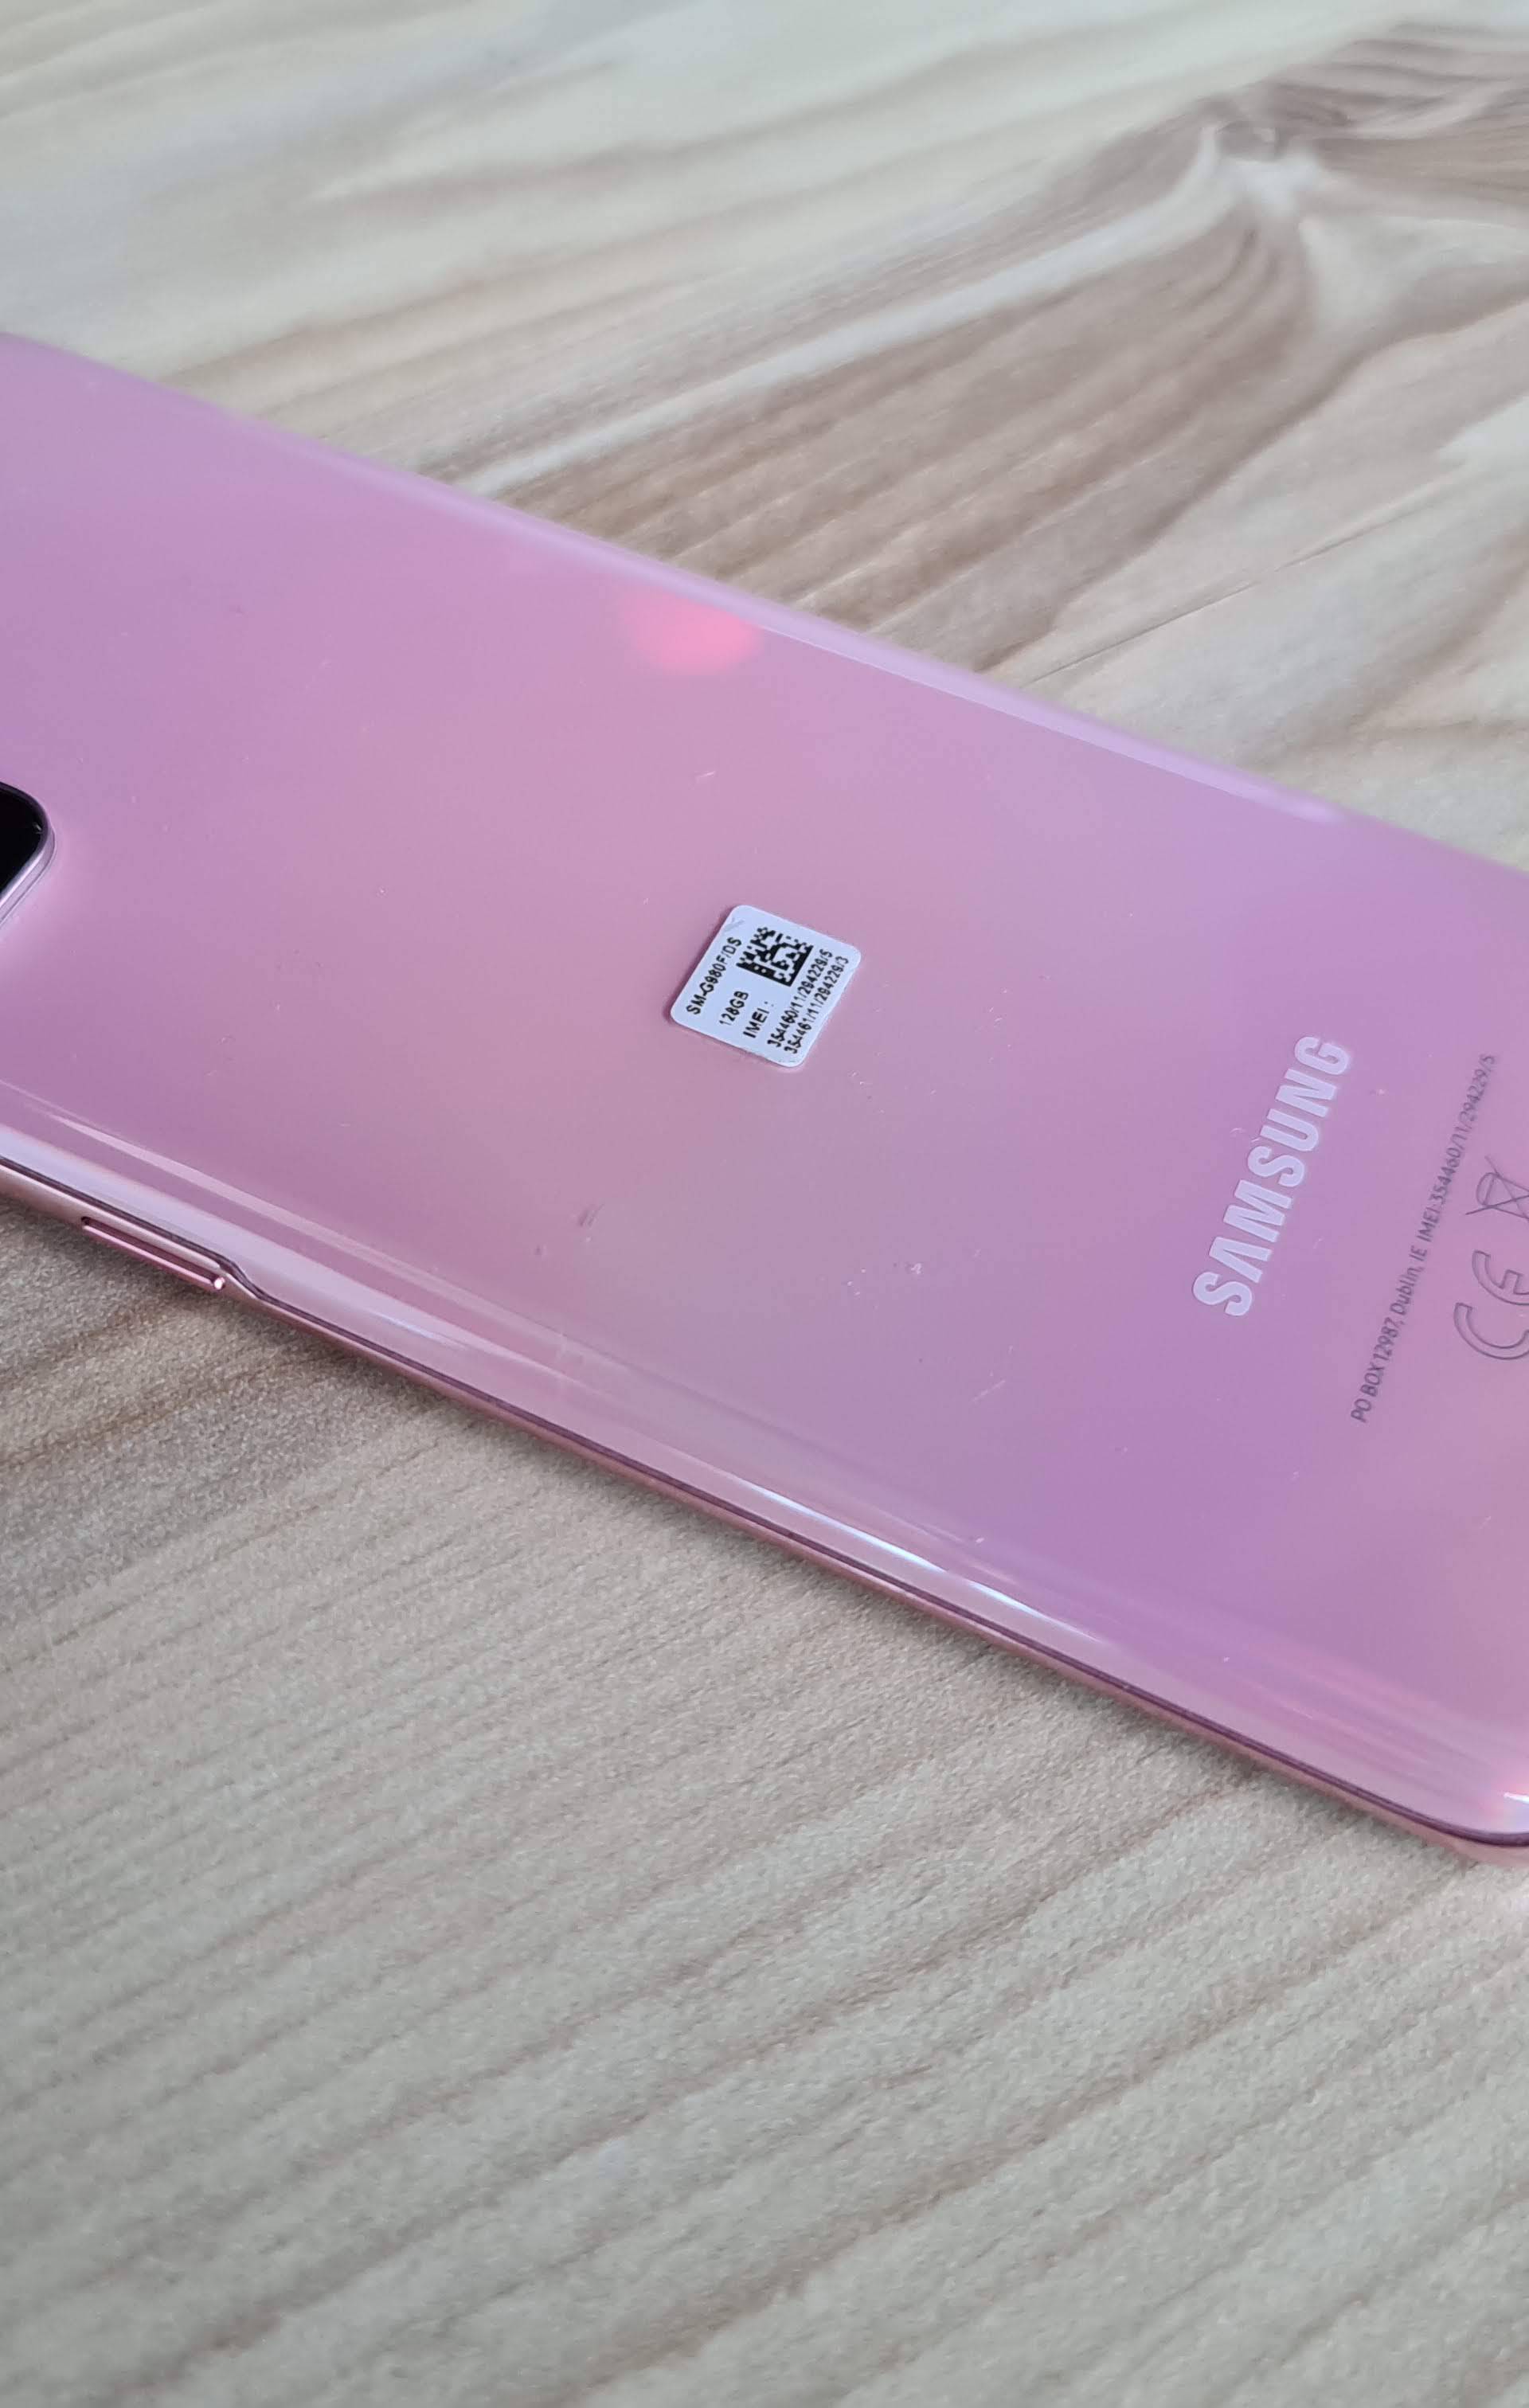 Građen po mjeri: Isprobali smo Samsungov 'mali' Galaxy S20